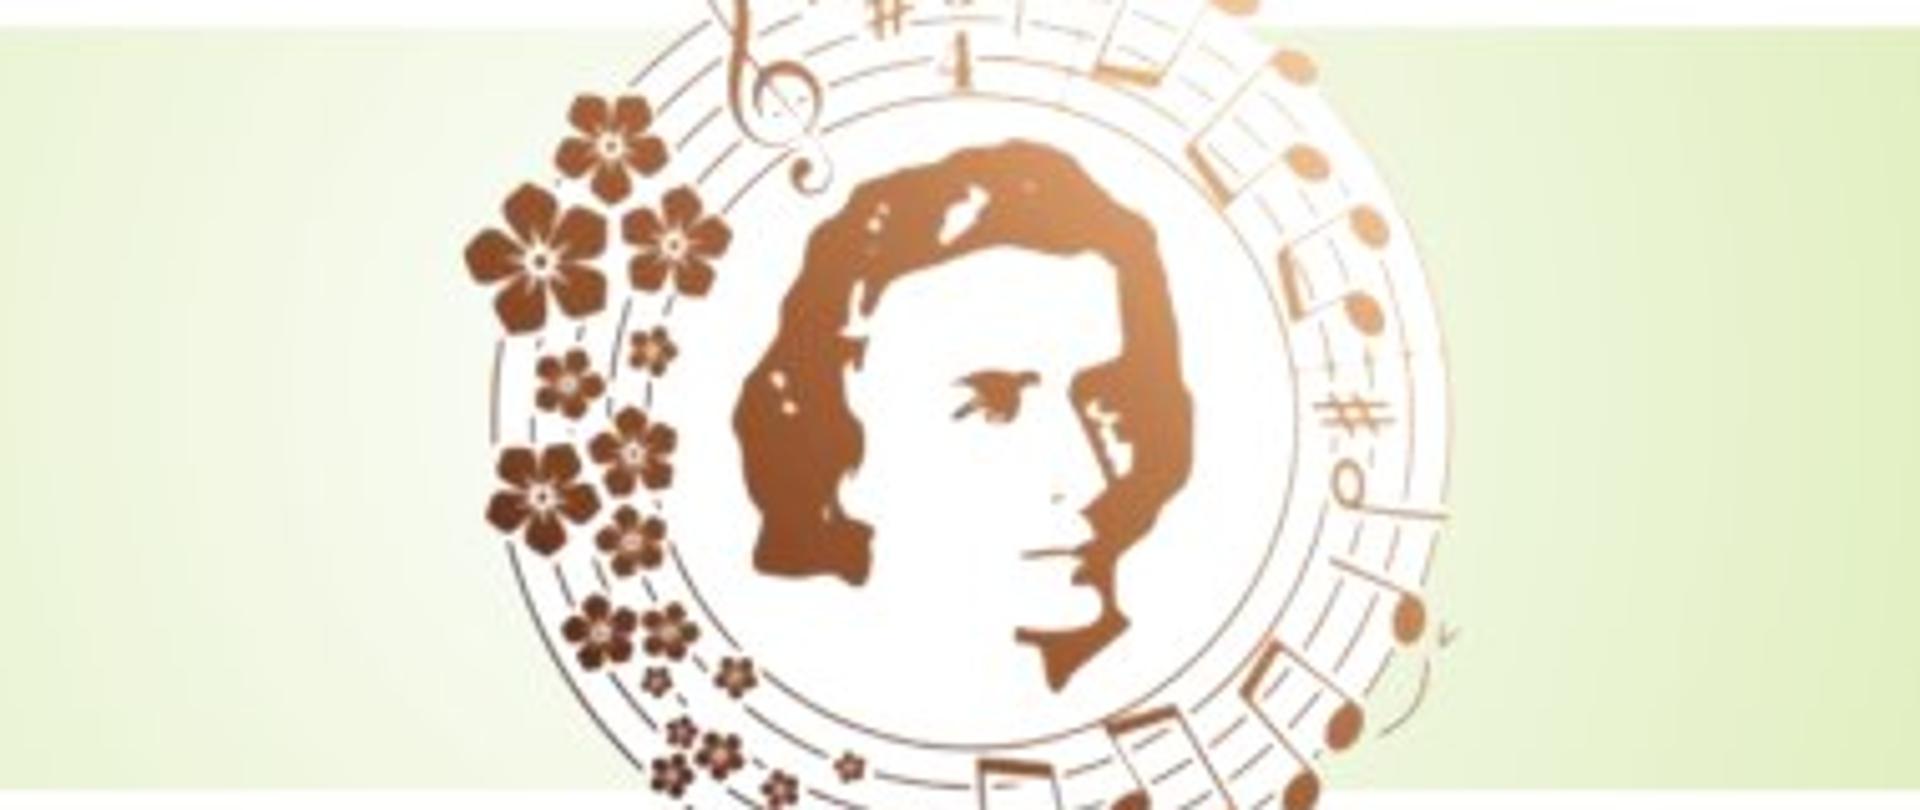 Logo Konkursu Chopinowska Wiosna, głowa Chopina otoczona brązowymi nutami na zielono białym tle